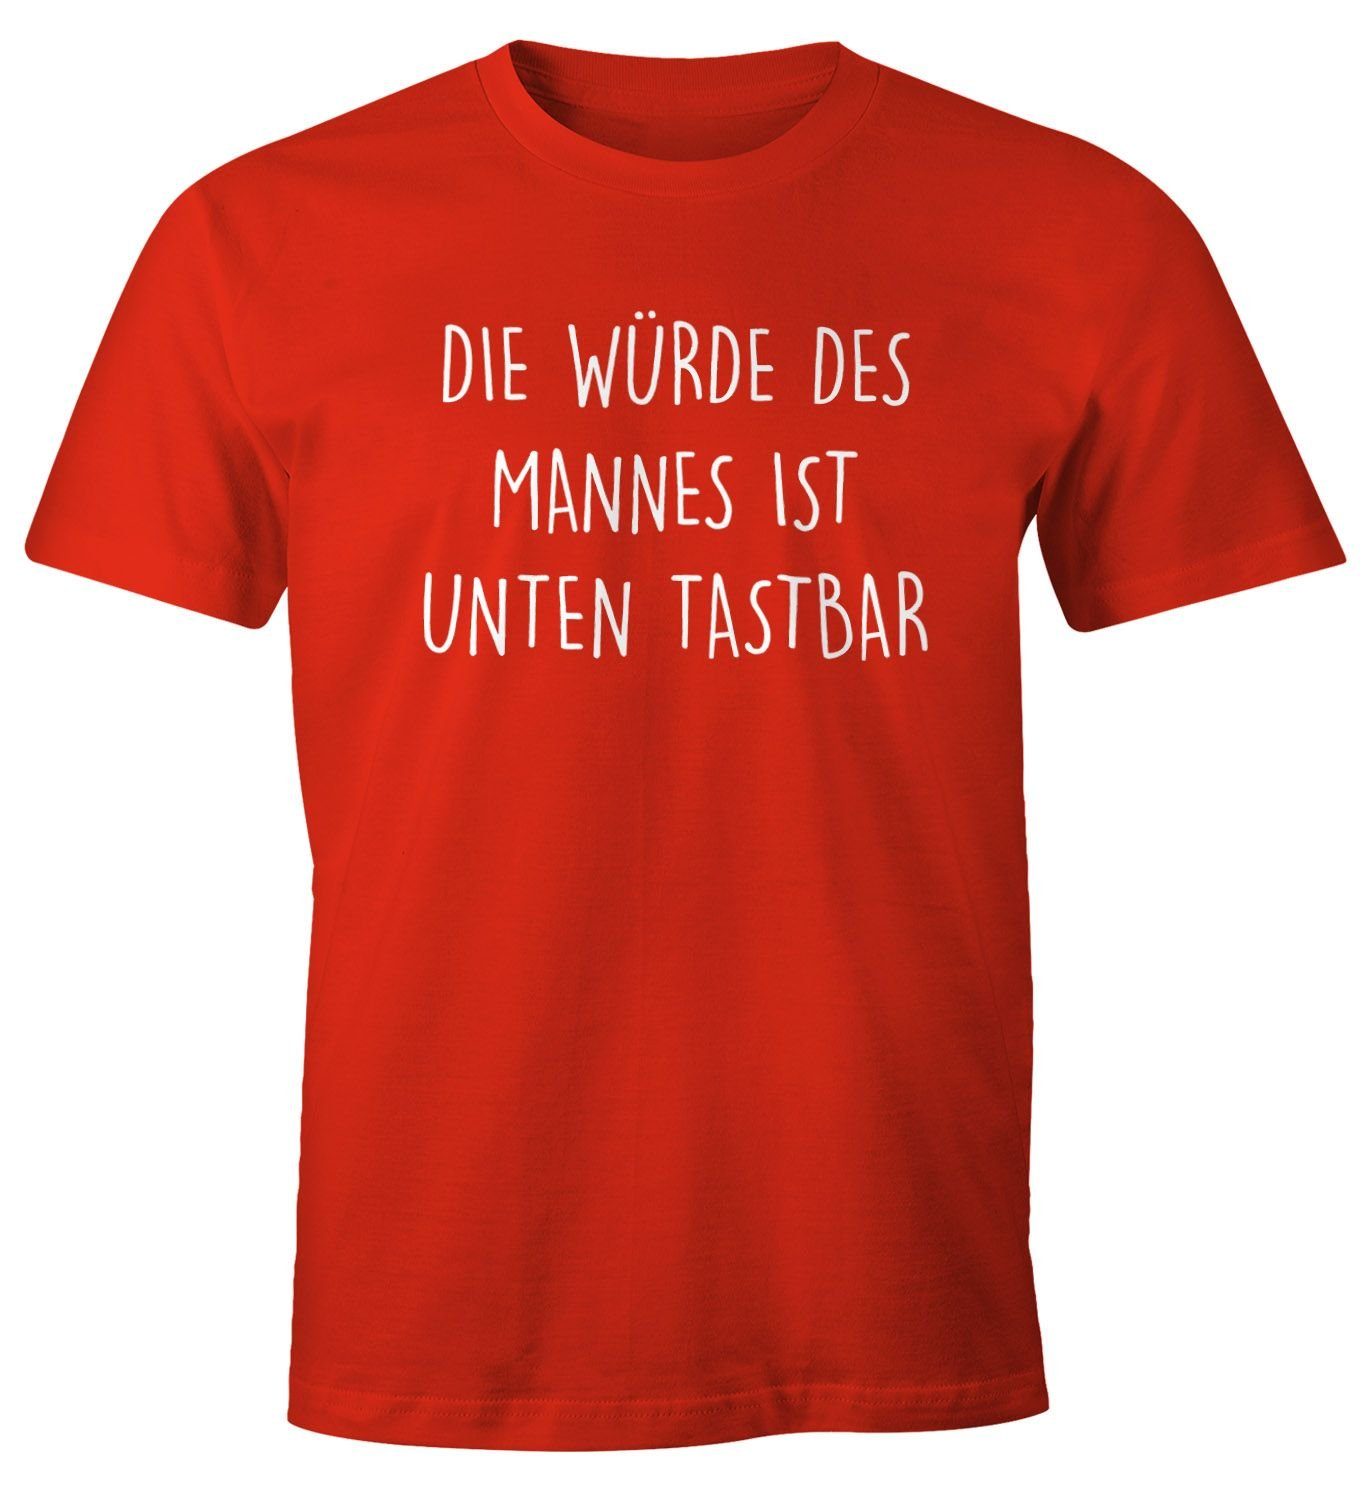 MoonWorks Print-Shirt Lustiges Herren T-Shirt mit Die Fun-Shirt Spruch Print tastbar mit Mannes rot des unten ist Würde Moonworks®